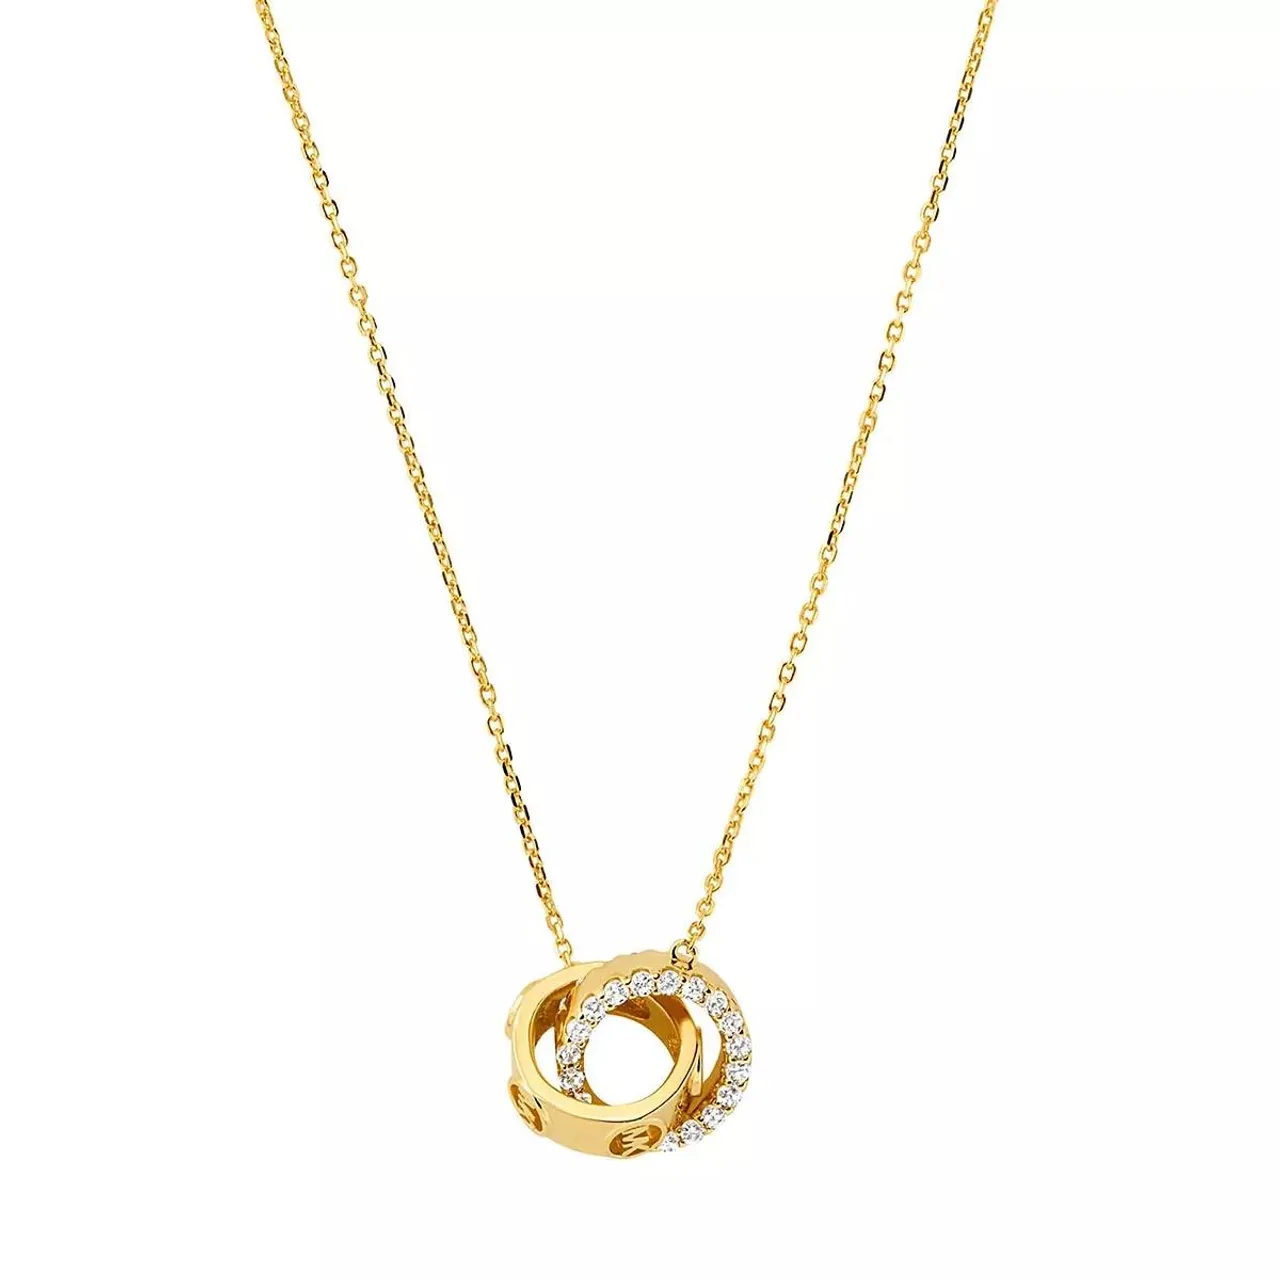 Michael Kors Halskette - 14K Gold-Plated Interlocking Necklace - Gr. unisize - in Gold - für Damen